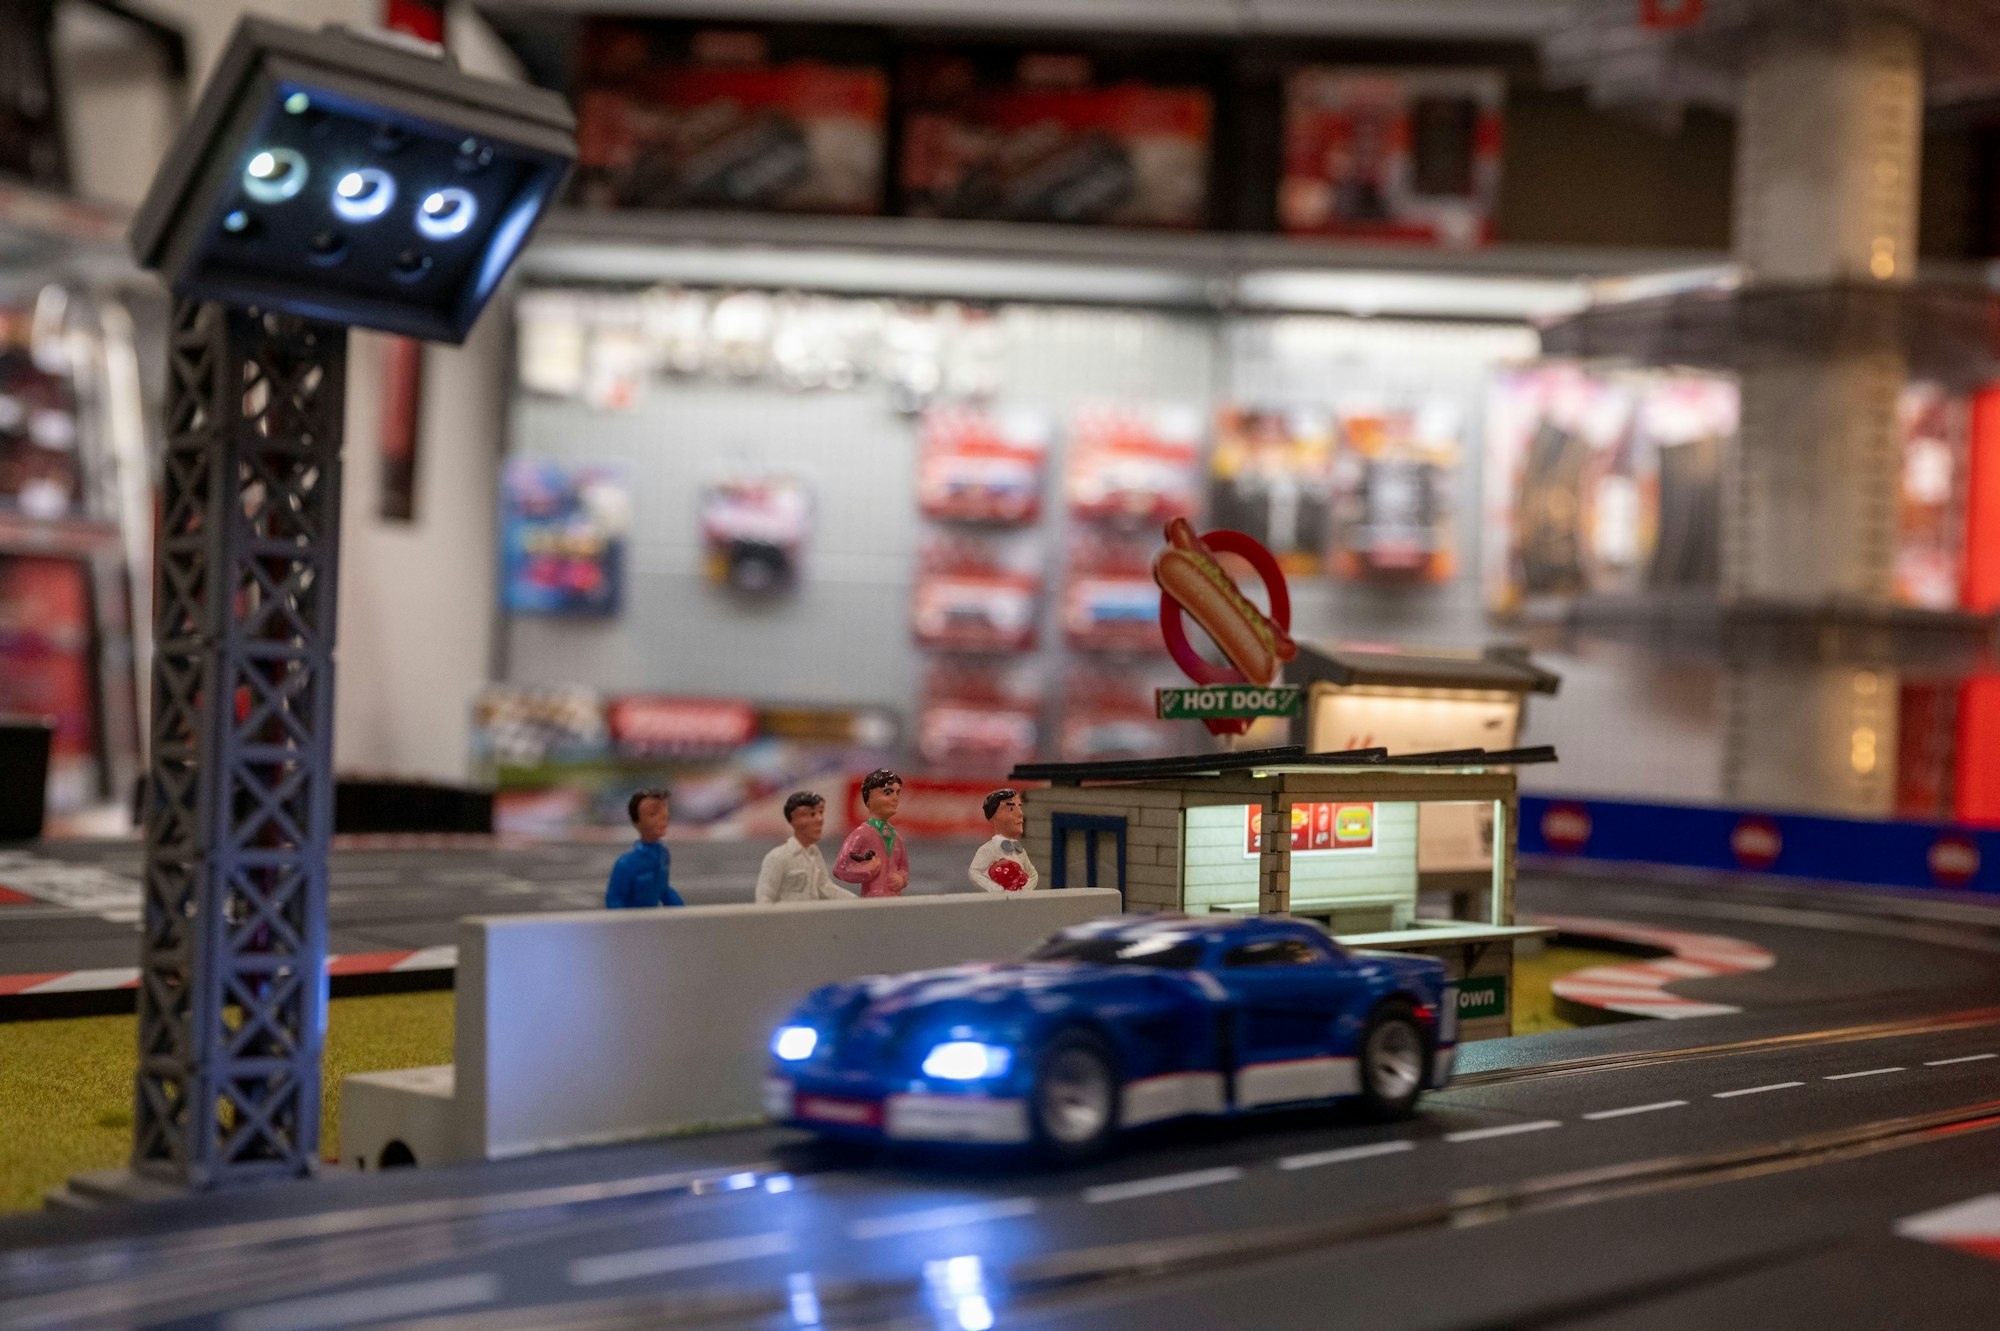 Scheinwerfer, Zuschauer, Hot-Dog-Stand: liebevolle Details an der Carrerabahn